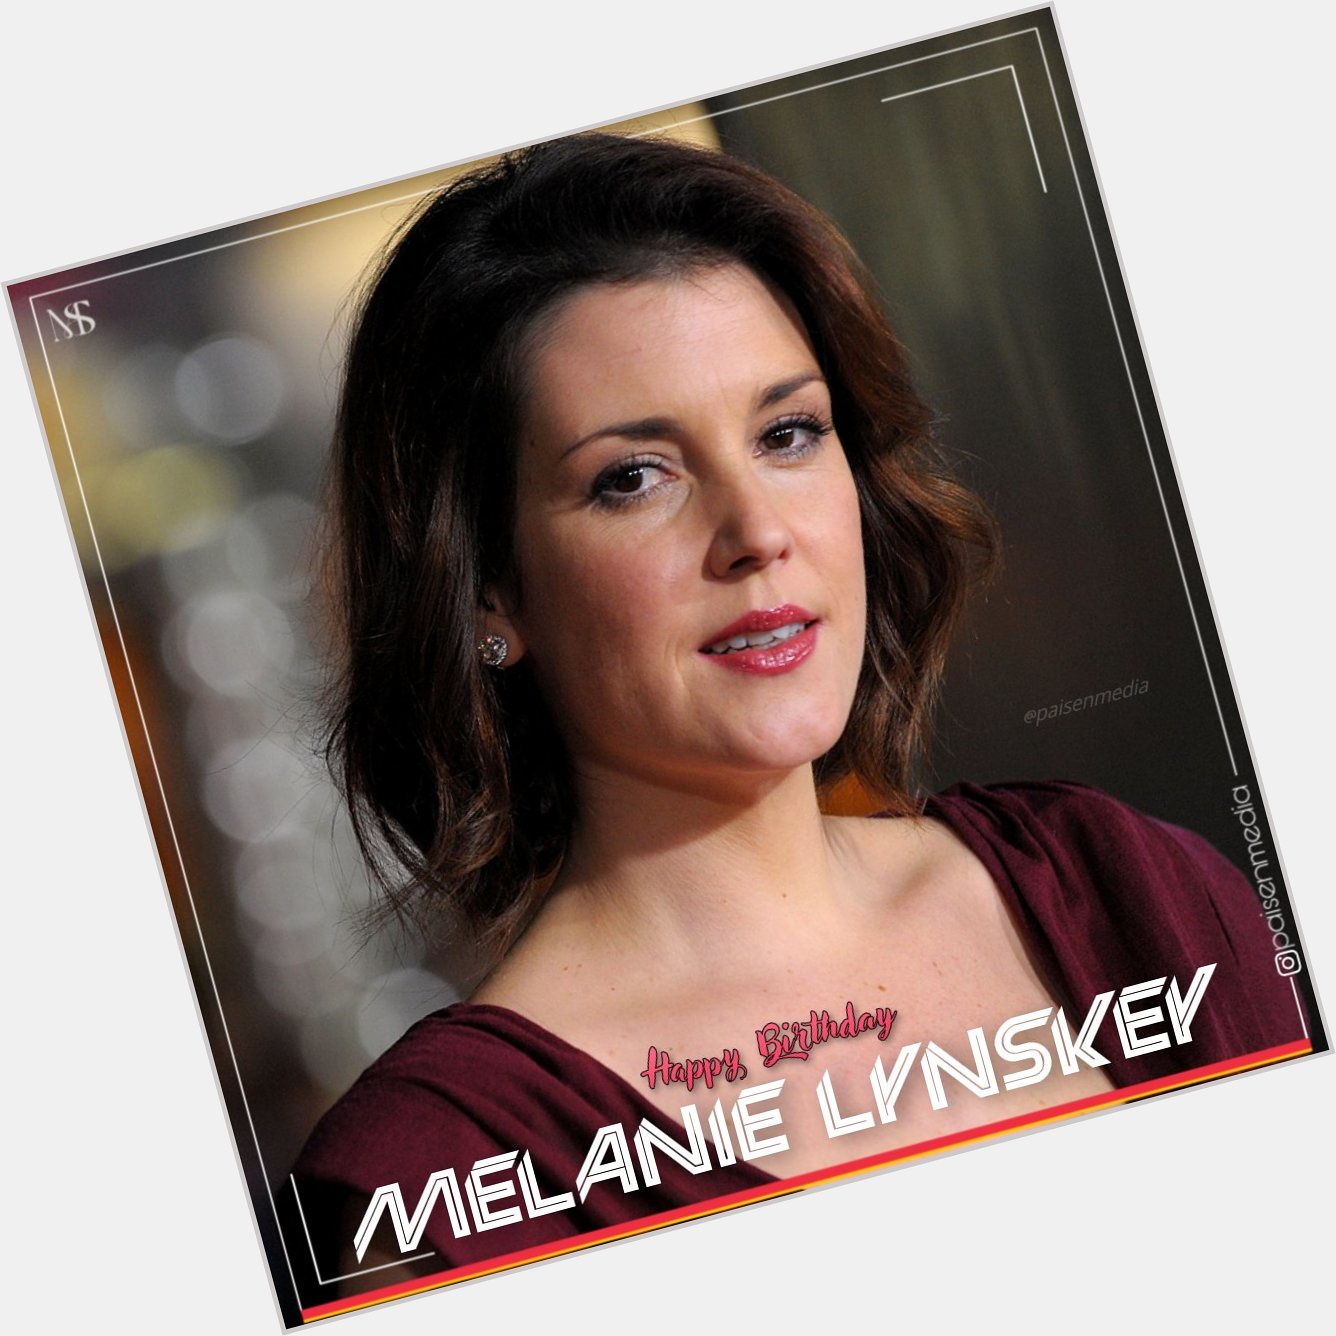 Wishing a very Happy Birthday to Melanie Lynskey ma\am .
.
.
.  